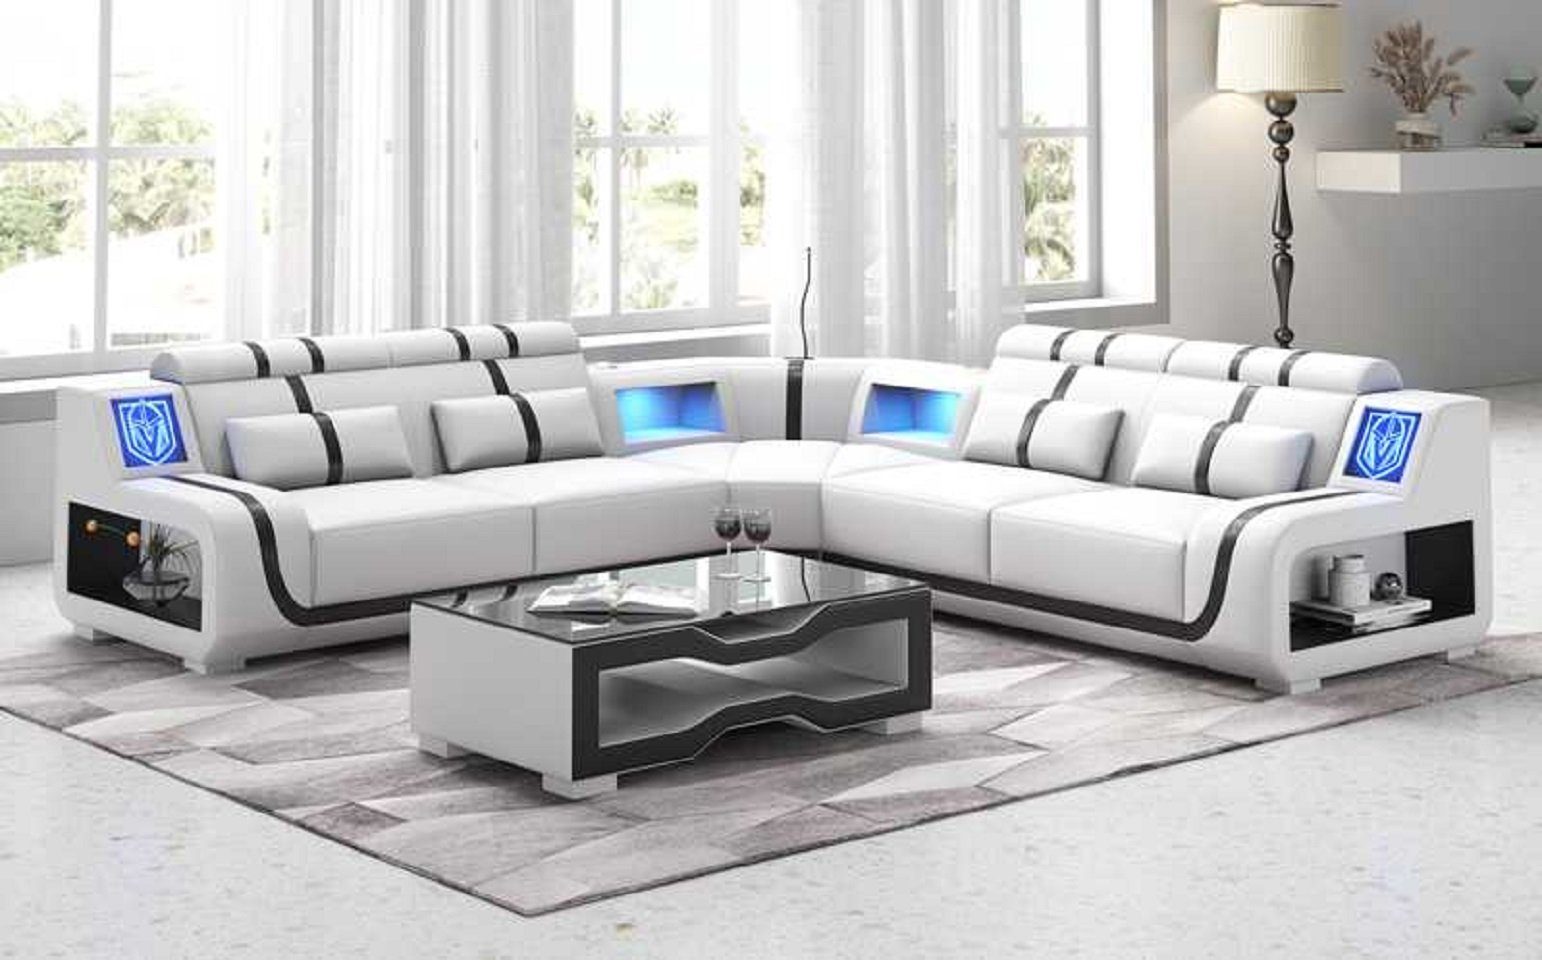 Teile, Sofas, Europe Luxus Kunstleder Ecksofa L Ecksofa Couch Made couchen JVmoebel in 3 Sofa Weiß Modern Form